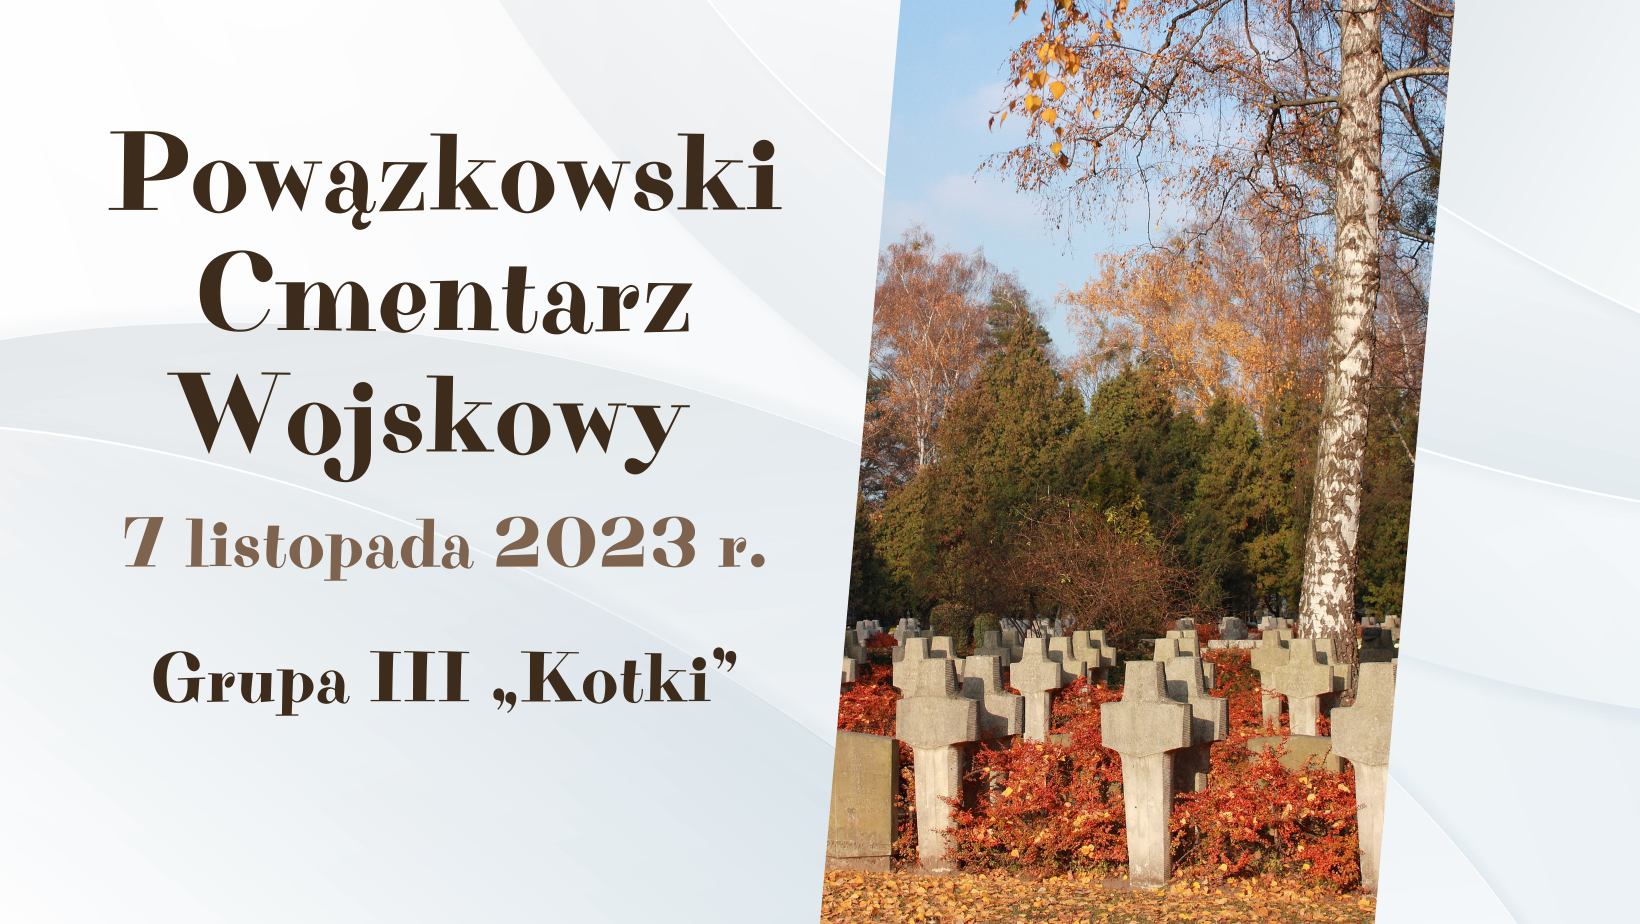 Grafika z napisem Powązkowski Cmentarz Wojskowy 7 listopada 2023 r. Grupa III Kotki, ze zdjęciem cmentarza.